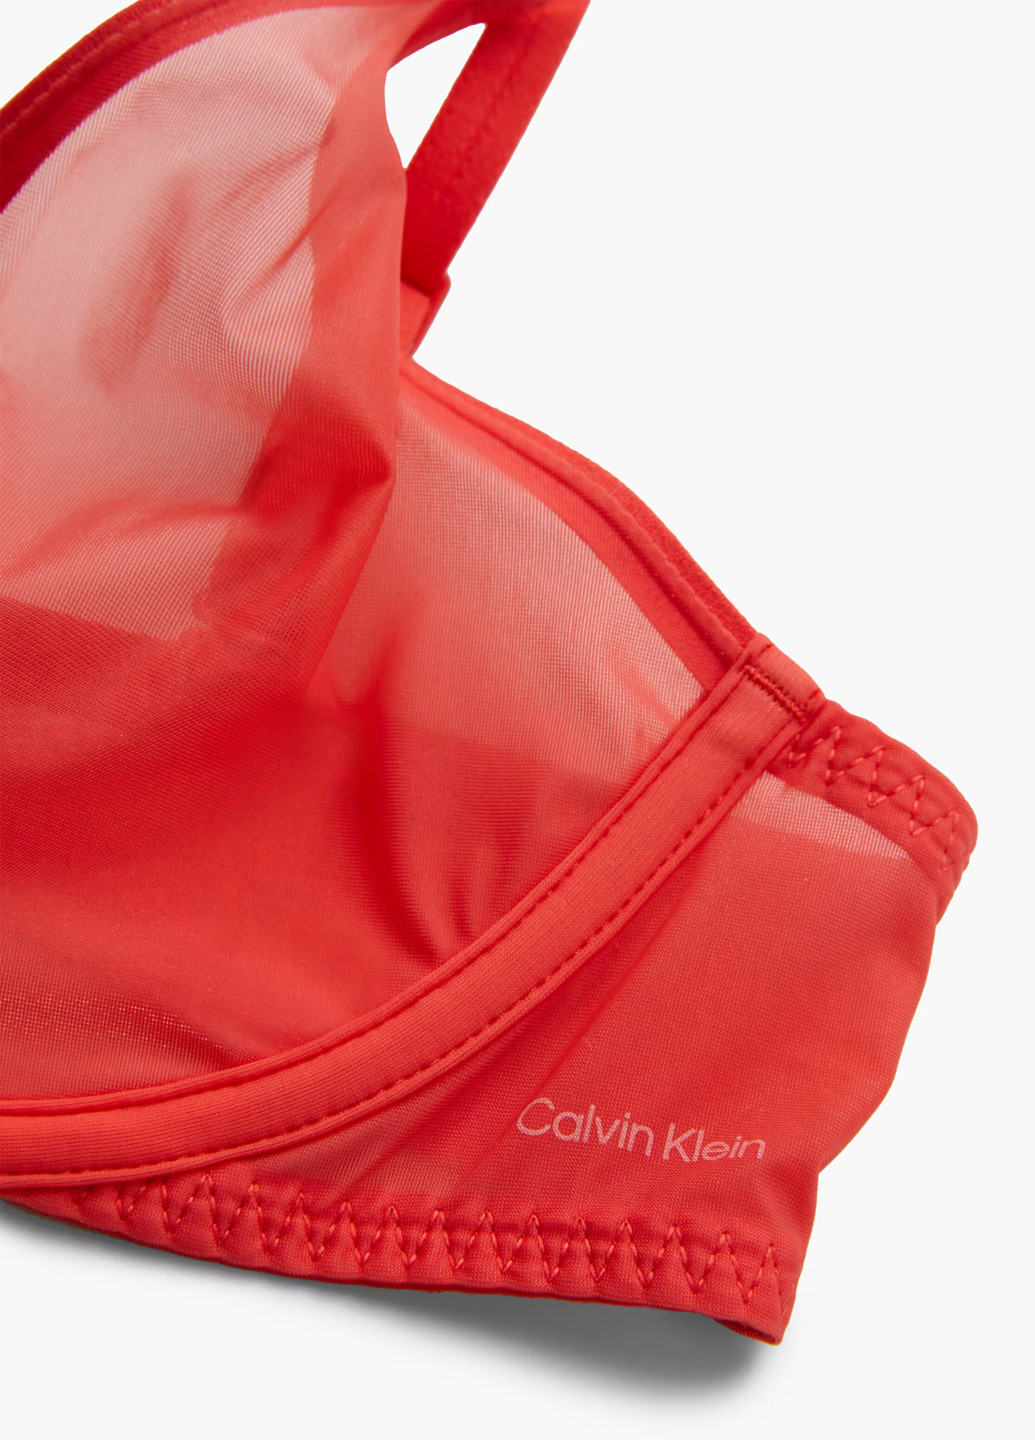 Красный бюстгальтер Calvin Klein с косточками нейлон